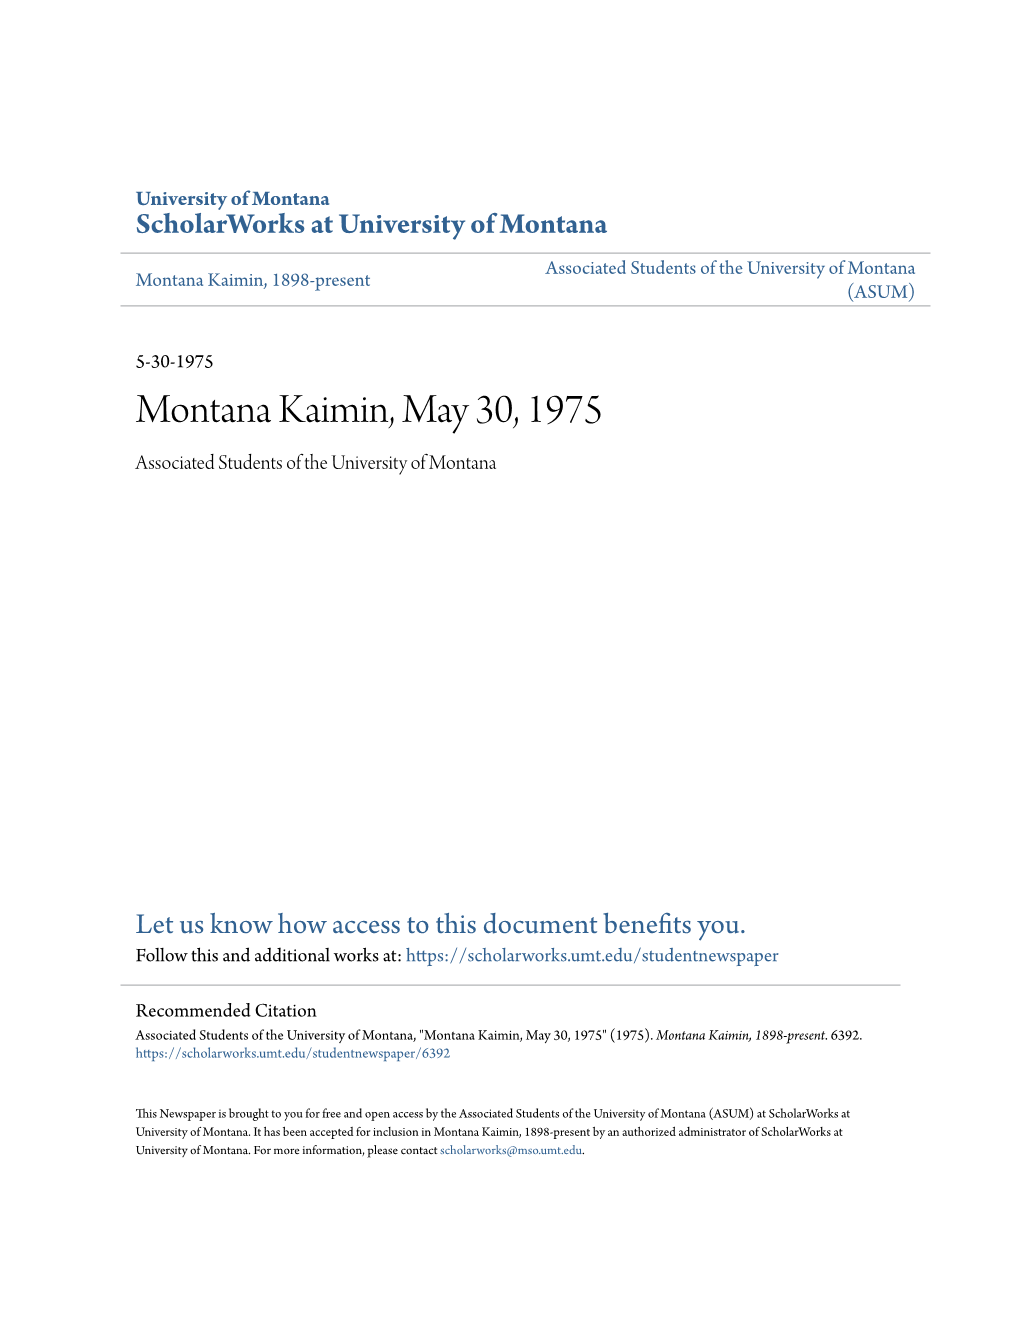 Montana Kaimin, May 30, 1975 Associated Students of the University of Montana